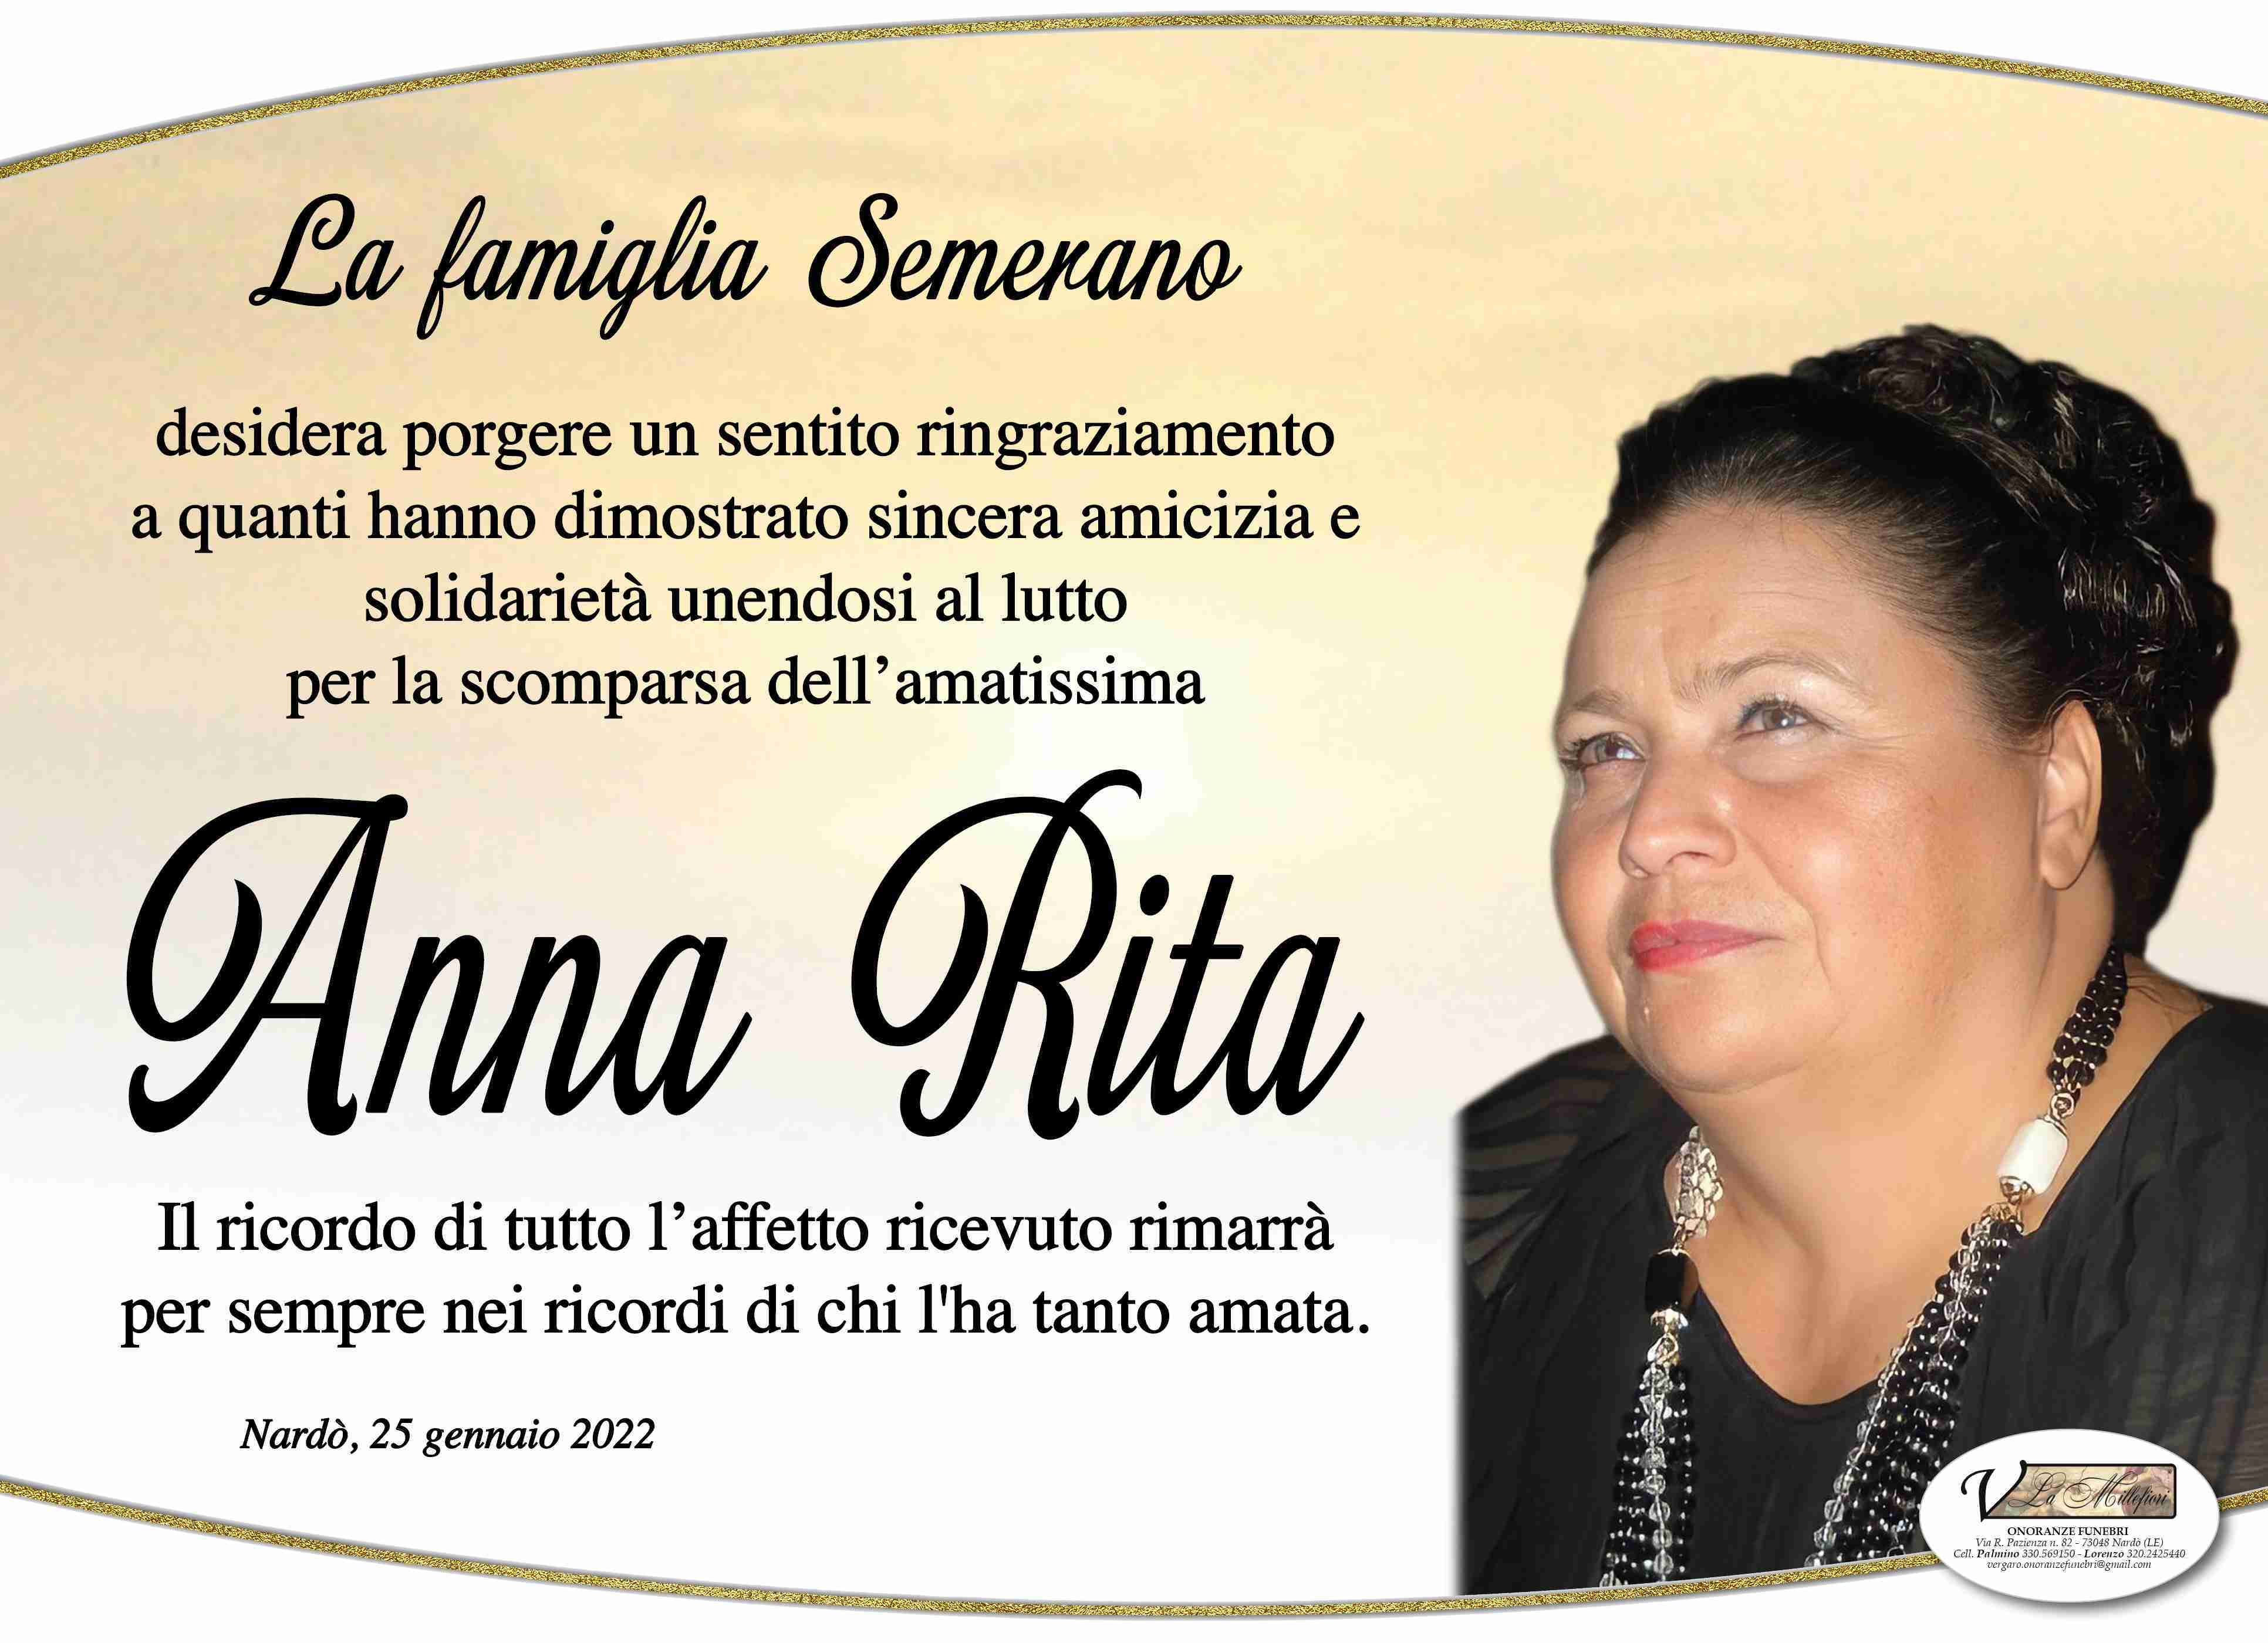 Anna Rita Semerano